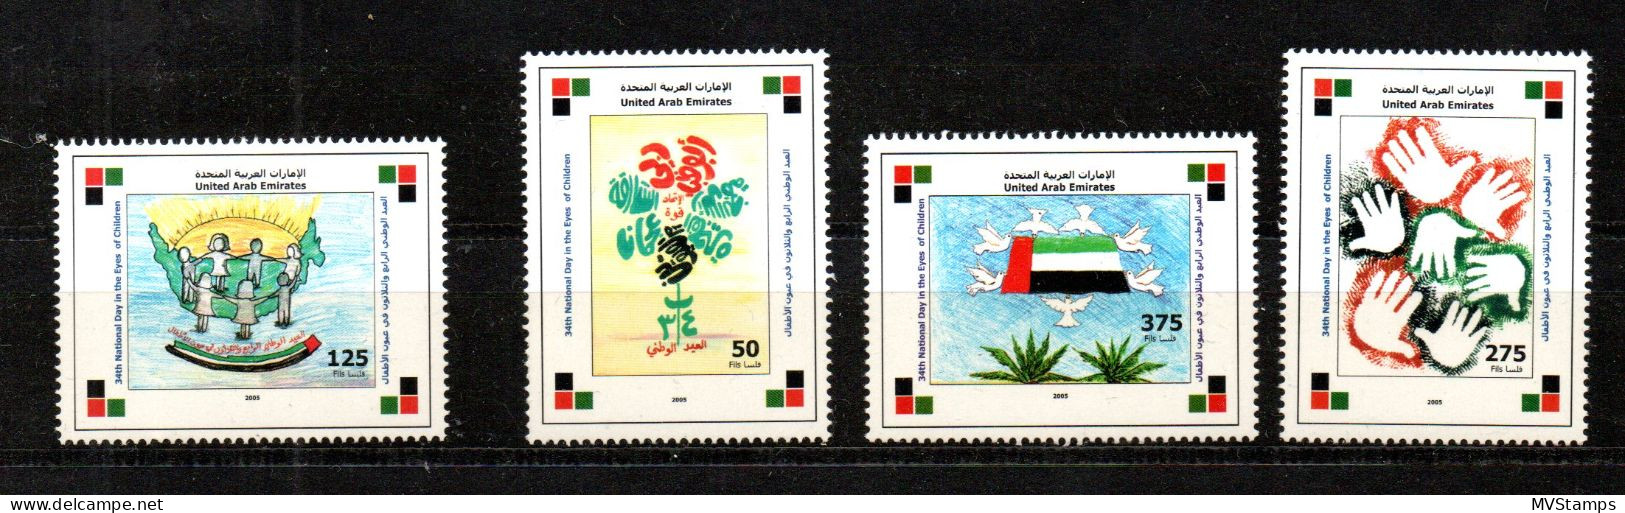 Vereinte Arab Emirates 2005 Satz 811/14 Kinderzeichnungen/Flagge Postfrisch - Emirats Arabes Unis (Général)